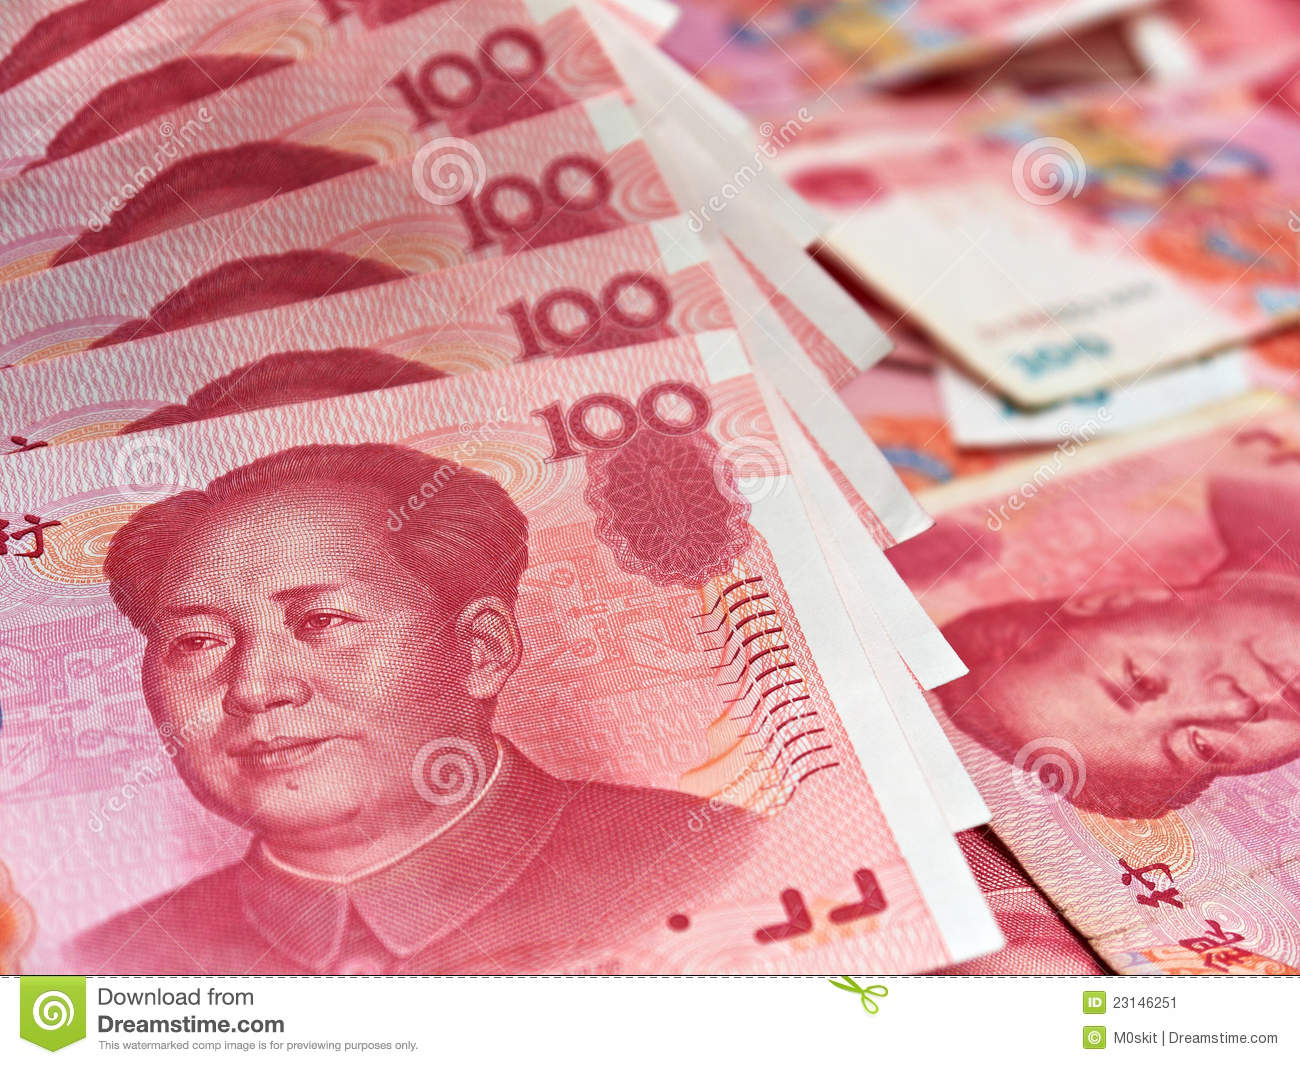 Chinesischer RenminbiChinese yuan